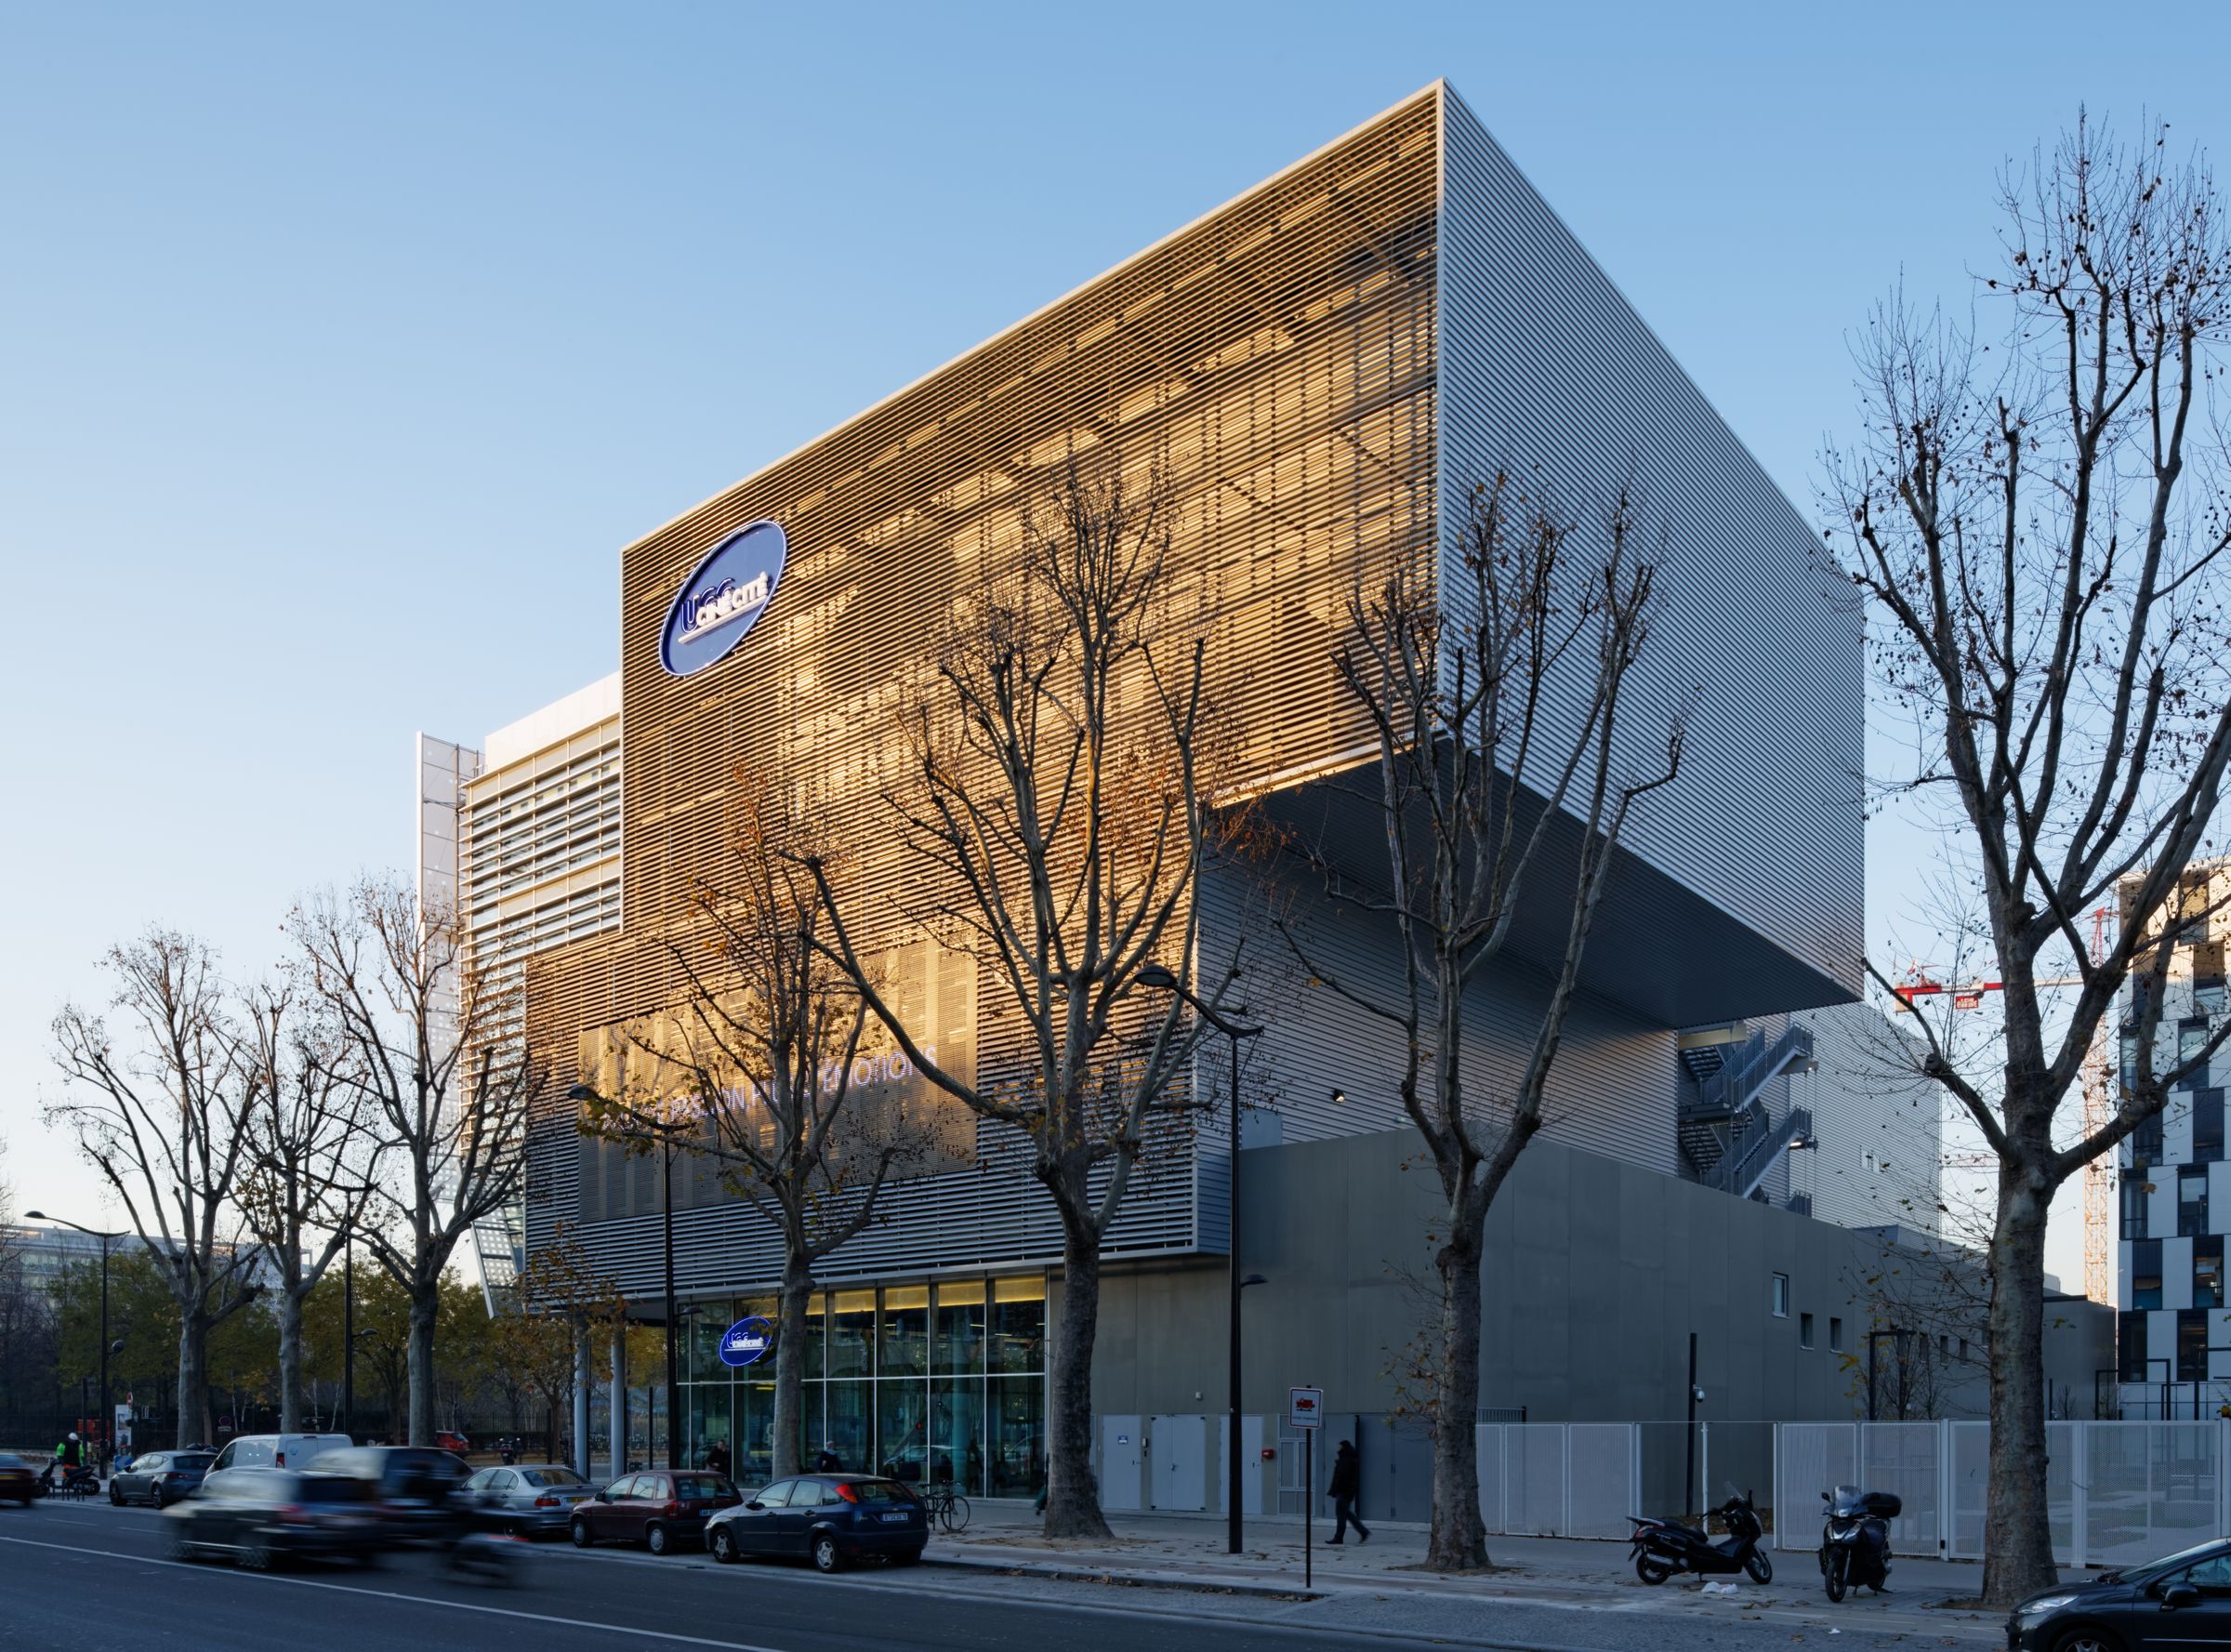 UGC Ciné Cité, Paris